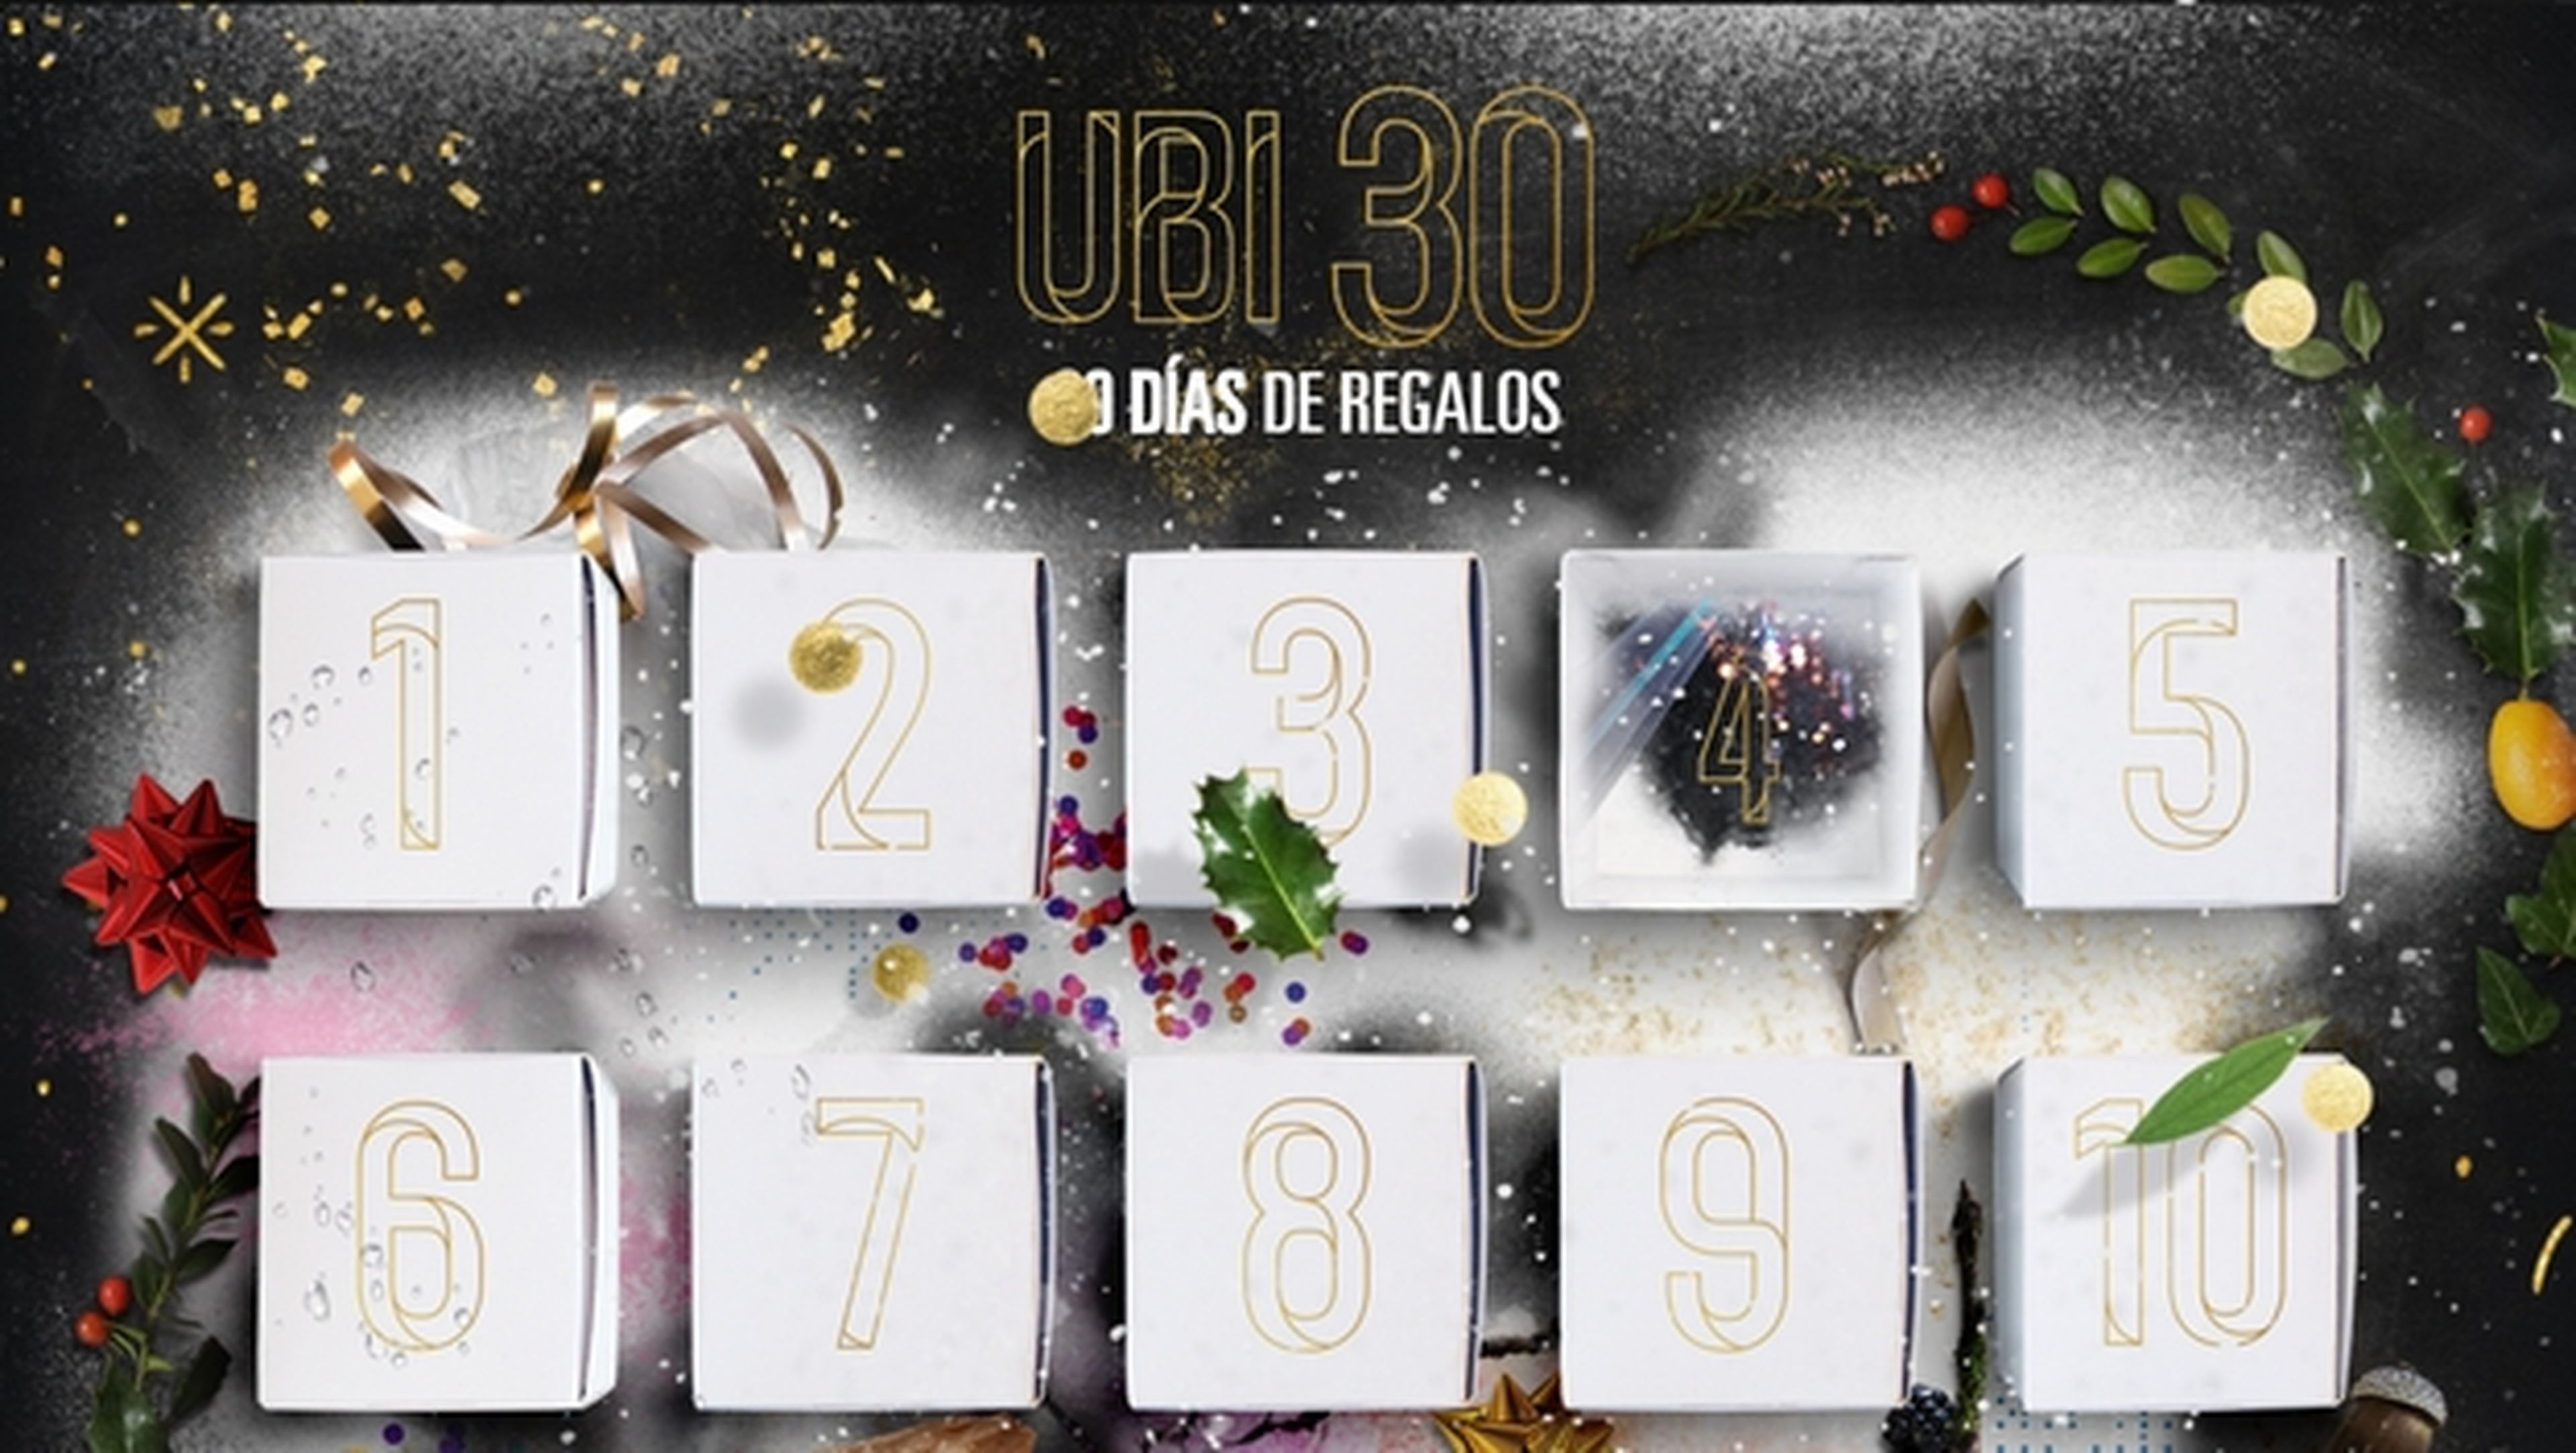 Ubi 30, un mes de juegos gratis y regalos de Ubisoft en diciembre